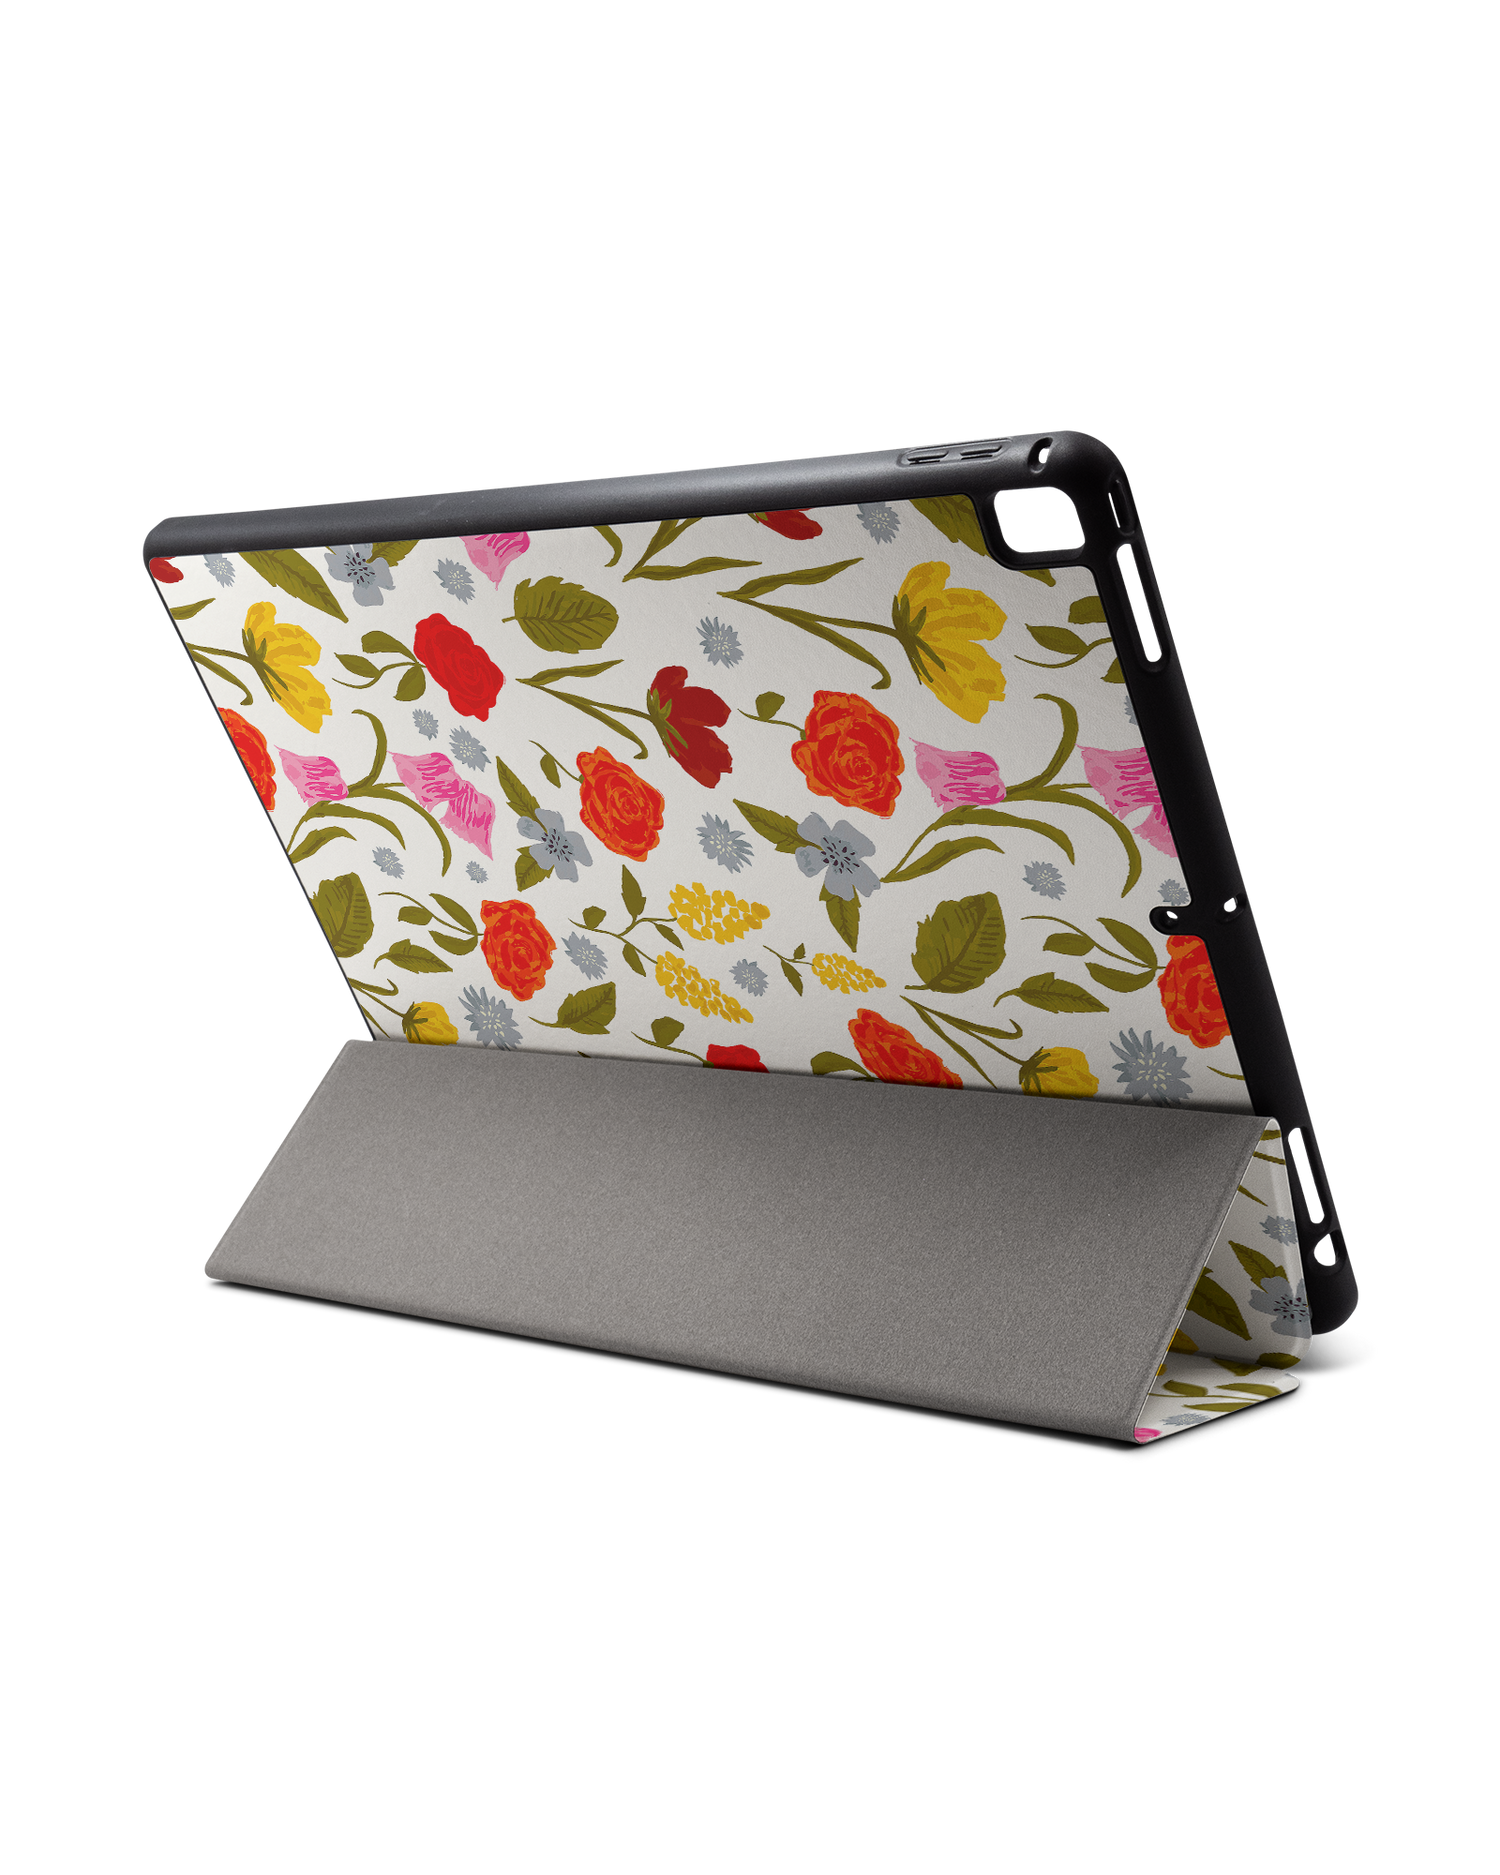 Botanical Beauties iPad Hülle mit Stifthalter für Apple iPad Pro 2 12.9'' (2017): Aufgestellt im Querformat von hinten